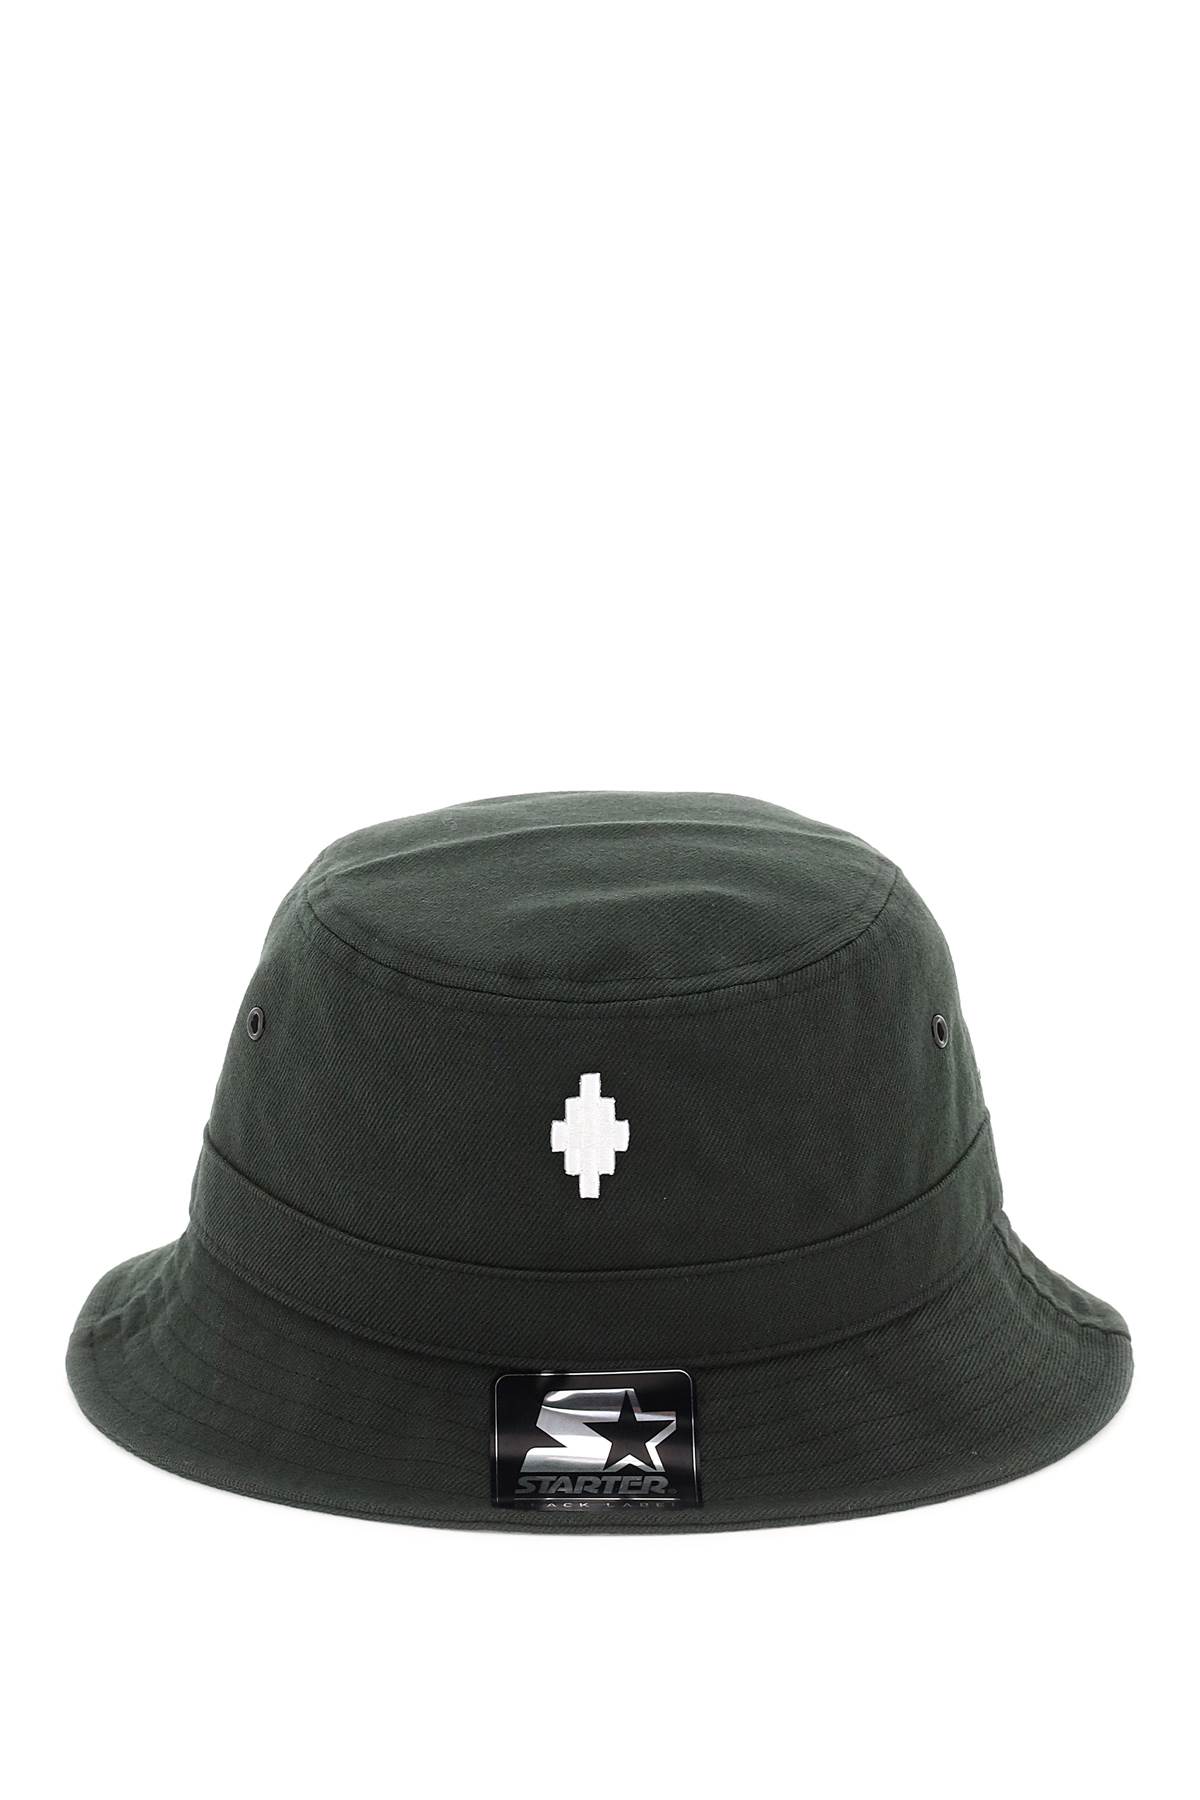 Marcelo Burlon Starter Cross Bucket Hat - Black/white - male - Size: 0one size